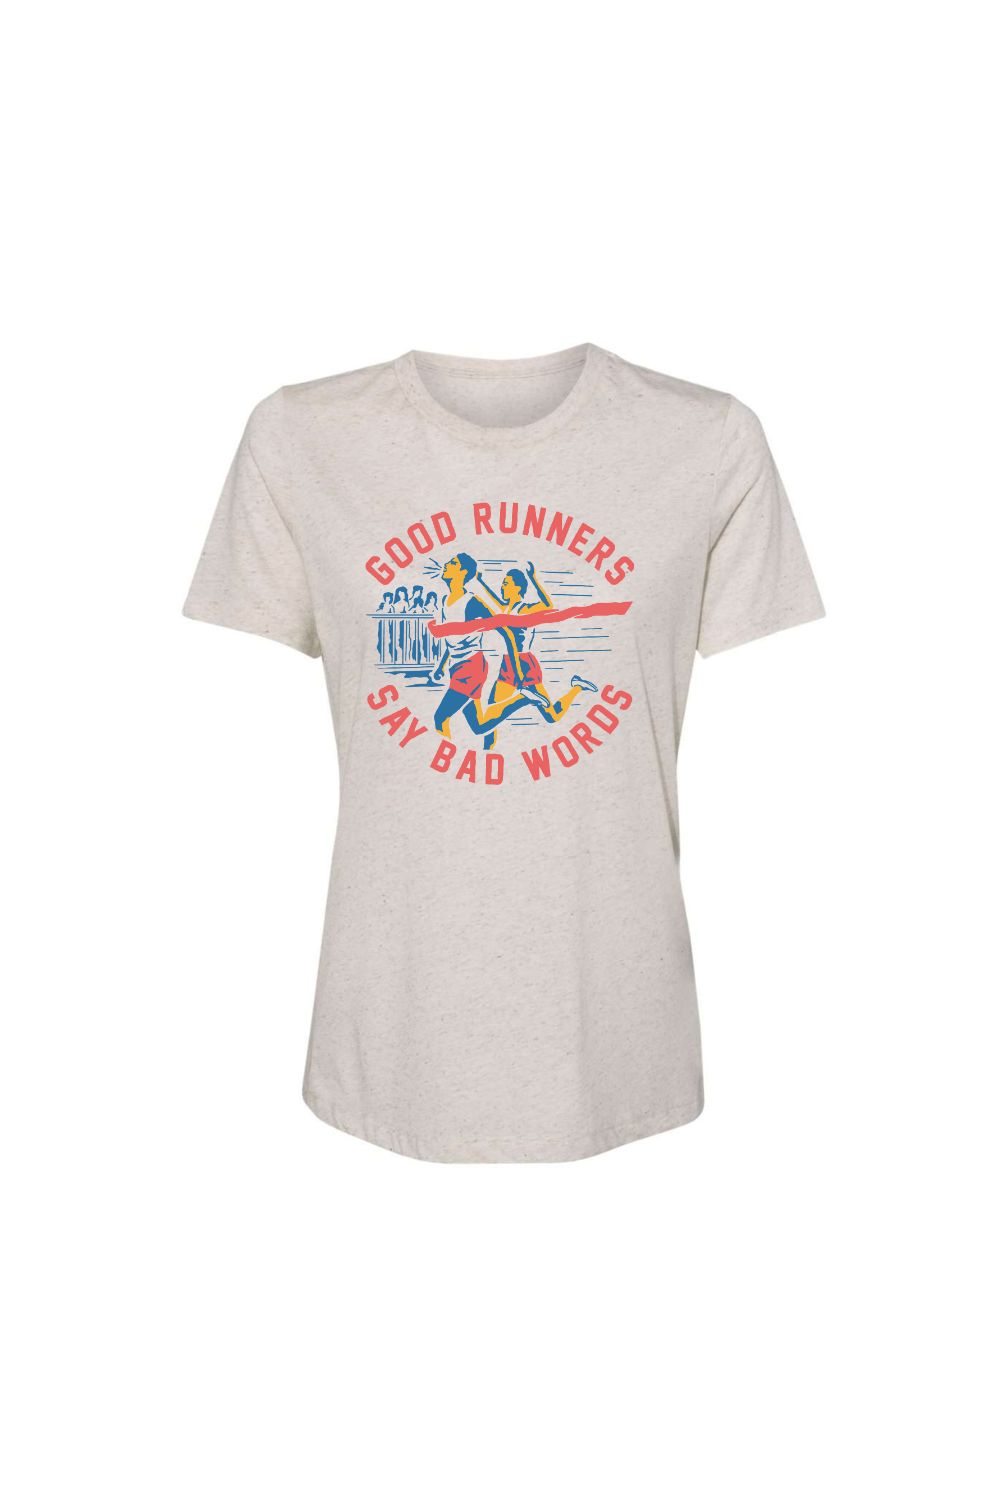 Good Runners Women's T-shirt